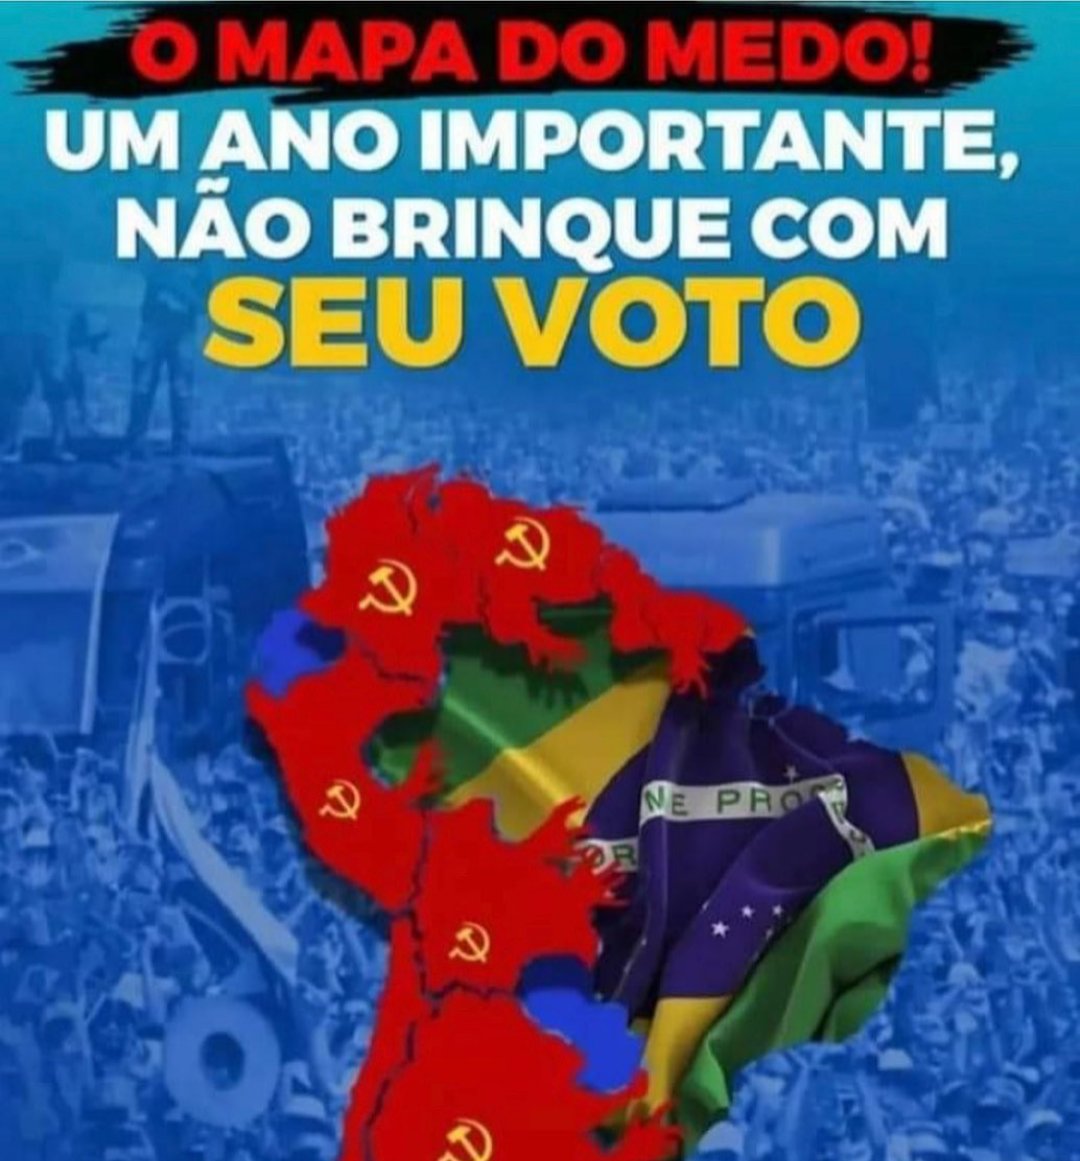 Cabe a nós lutar para impedir que o nosso Brasil verde e amarelo seja tragado pela nojenta onda vermelha. Vamos à luta. É voto a voto.